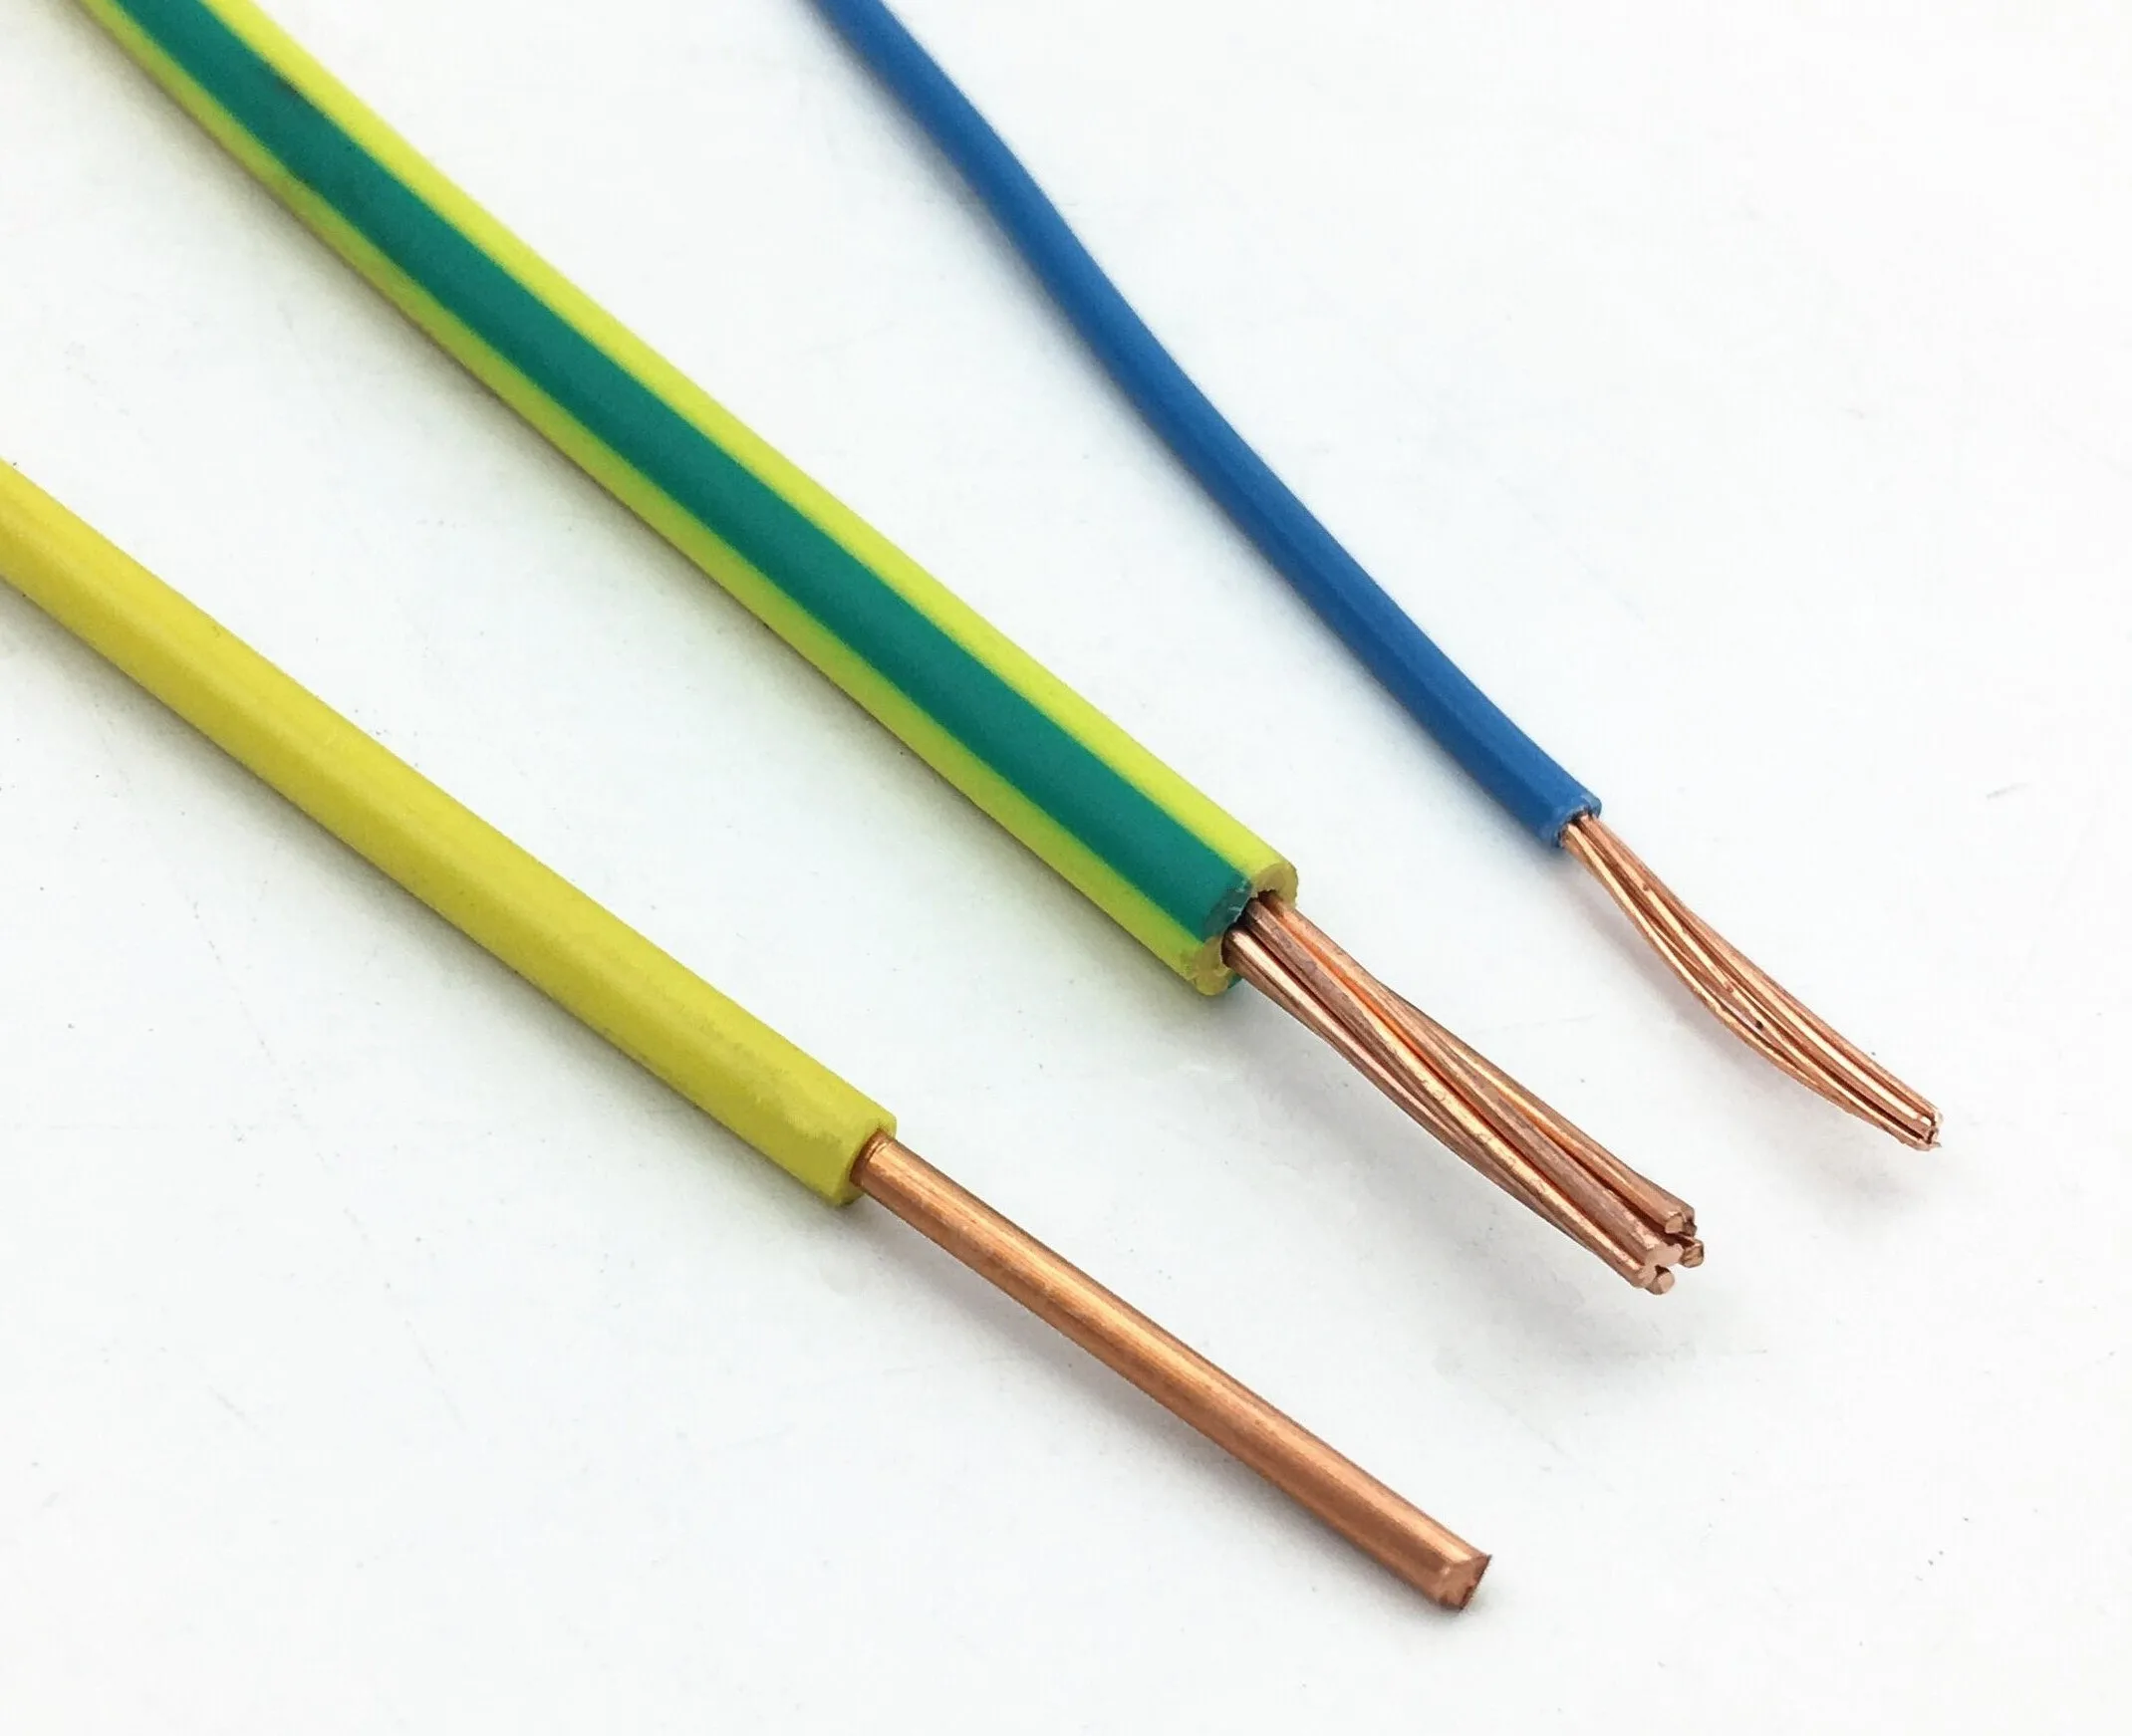 Провод 3 6 мм. Провод многожильный медный 1.5. 3x4+1x2.5 Cable wire. Провода электрические многожильные 2х2,5 (450/750v) ПВХ. Провод заземления 4мм2 желто-зеленый.